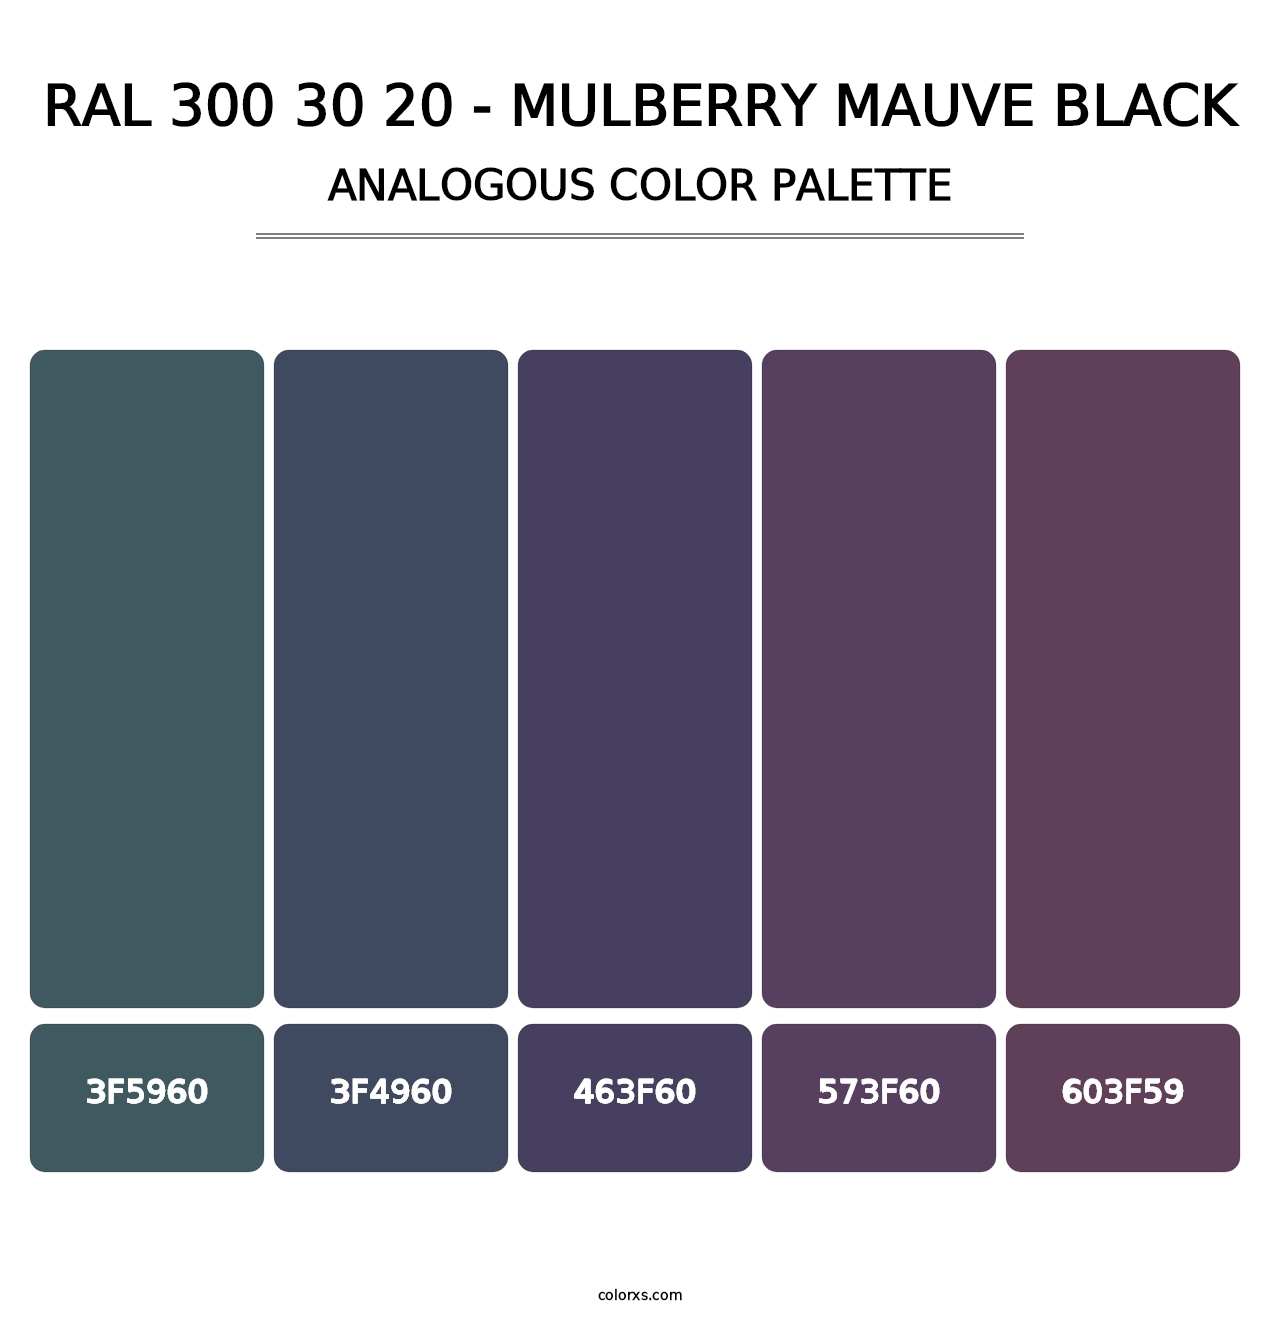 RAL 300 30 20 - Mulberry Mauve Black - Analogous Color Palette